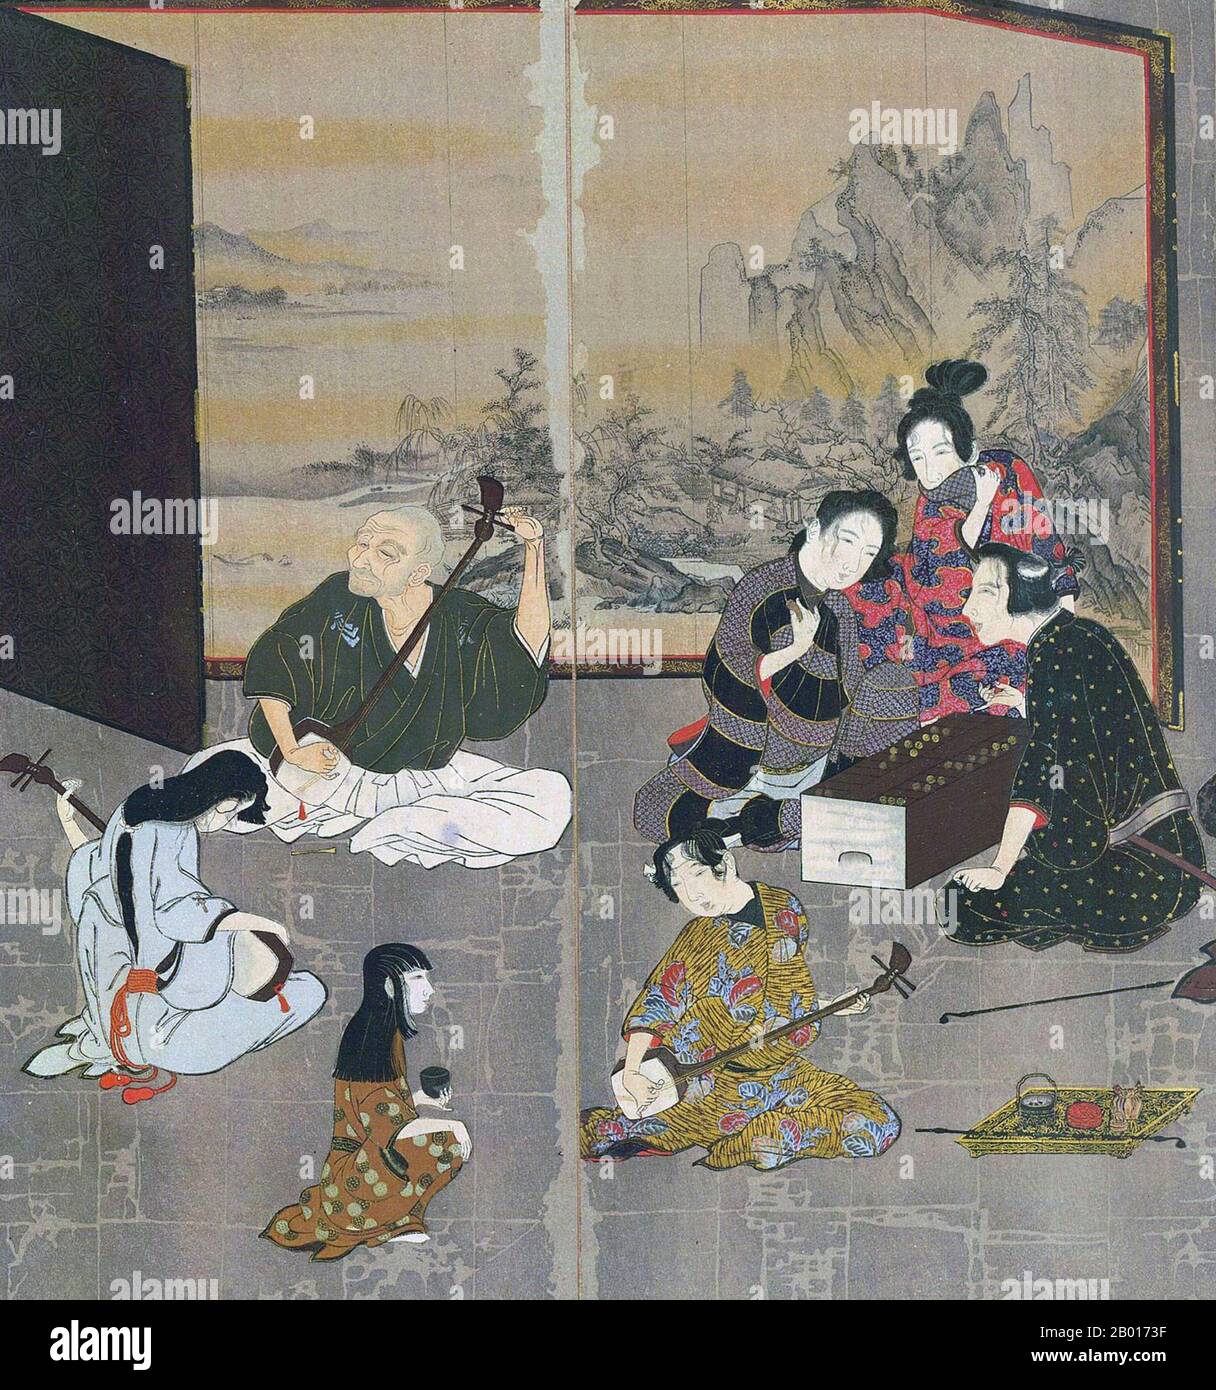 Giappone: Sezione dallo schermo di Hikone, un dipinto di schermo pieghevole di byobu, c.. 1624-1644. Lo schermo Hikone era uno schermo pieghevole byobo dell'era di Kan'ei (c.. 1624-1644) del periodo Edo. Dipinta su carta in foglia d'oro e ripiegata in sei parti, lo schermo raffigura i quartieri del piacere di Kyoto, con persone che suonano musica e giochi. E' un rappresentante della prima pittura di genere giapponese moderna, e vista da alcuni come la prima opera d'arte ukiyo-e. È stato designato un tesoro nazionale nel 1955. Foto Stock